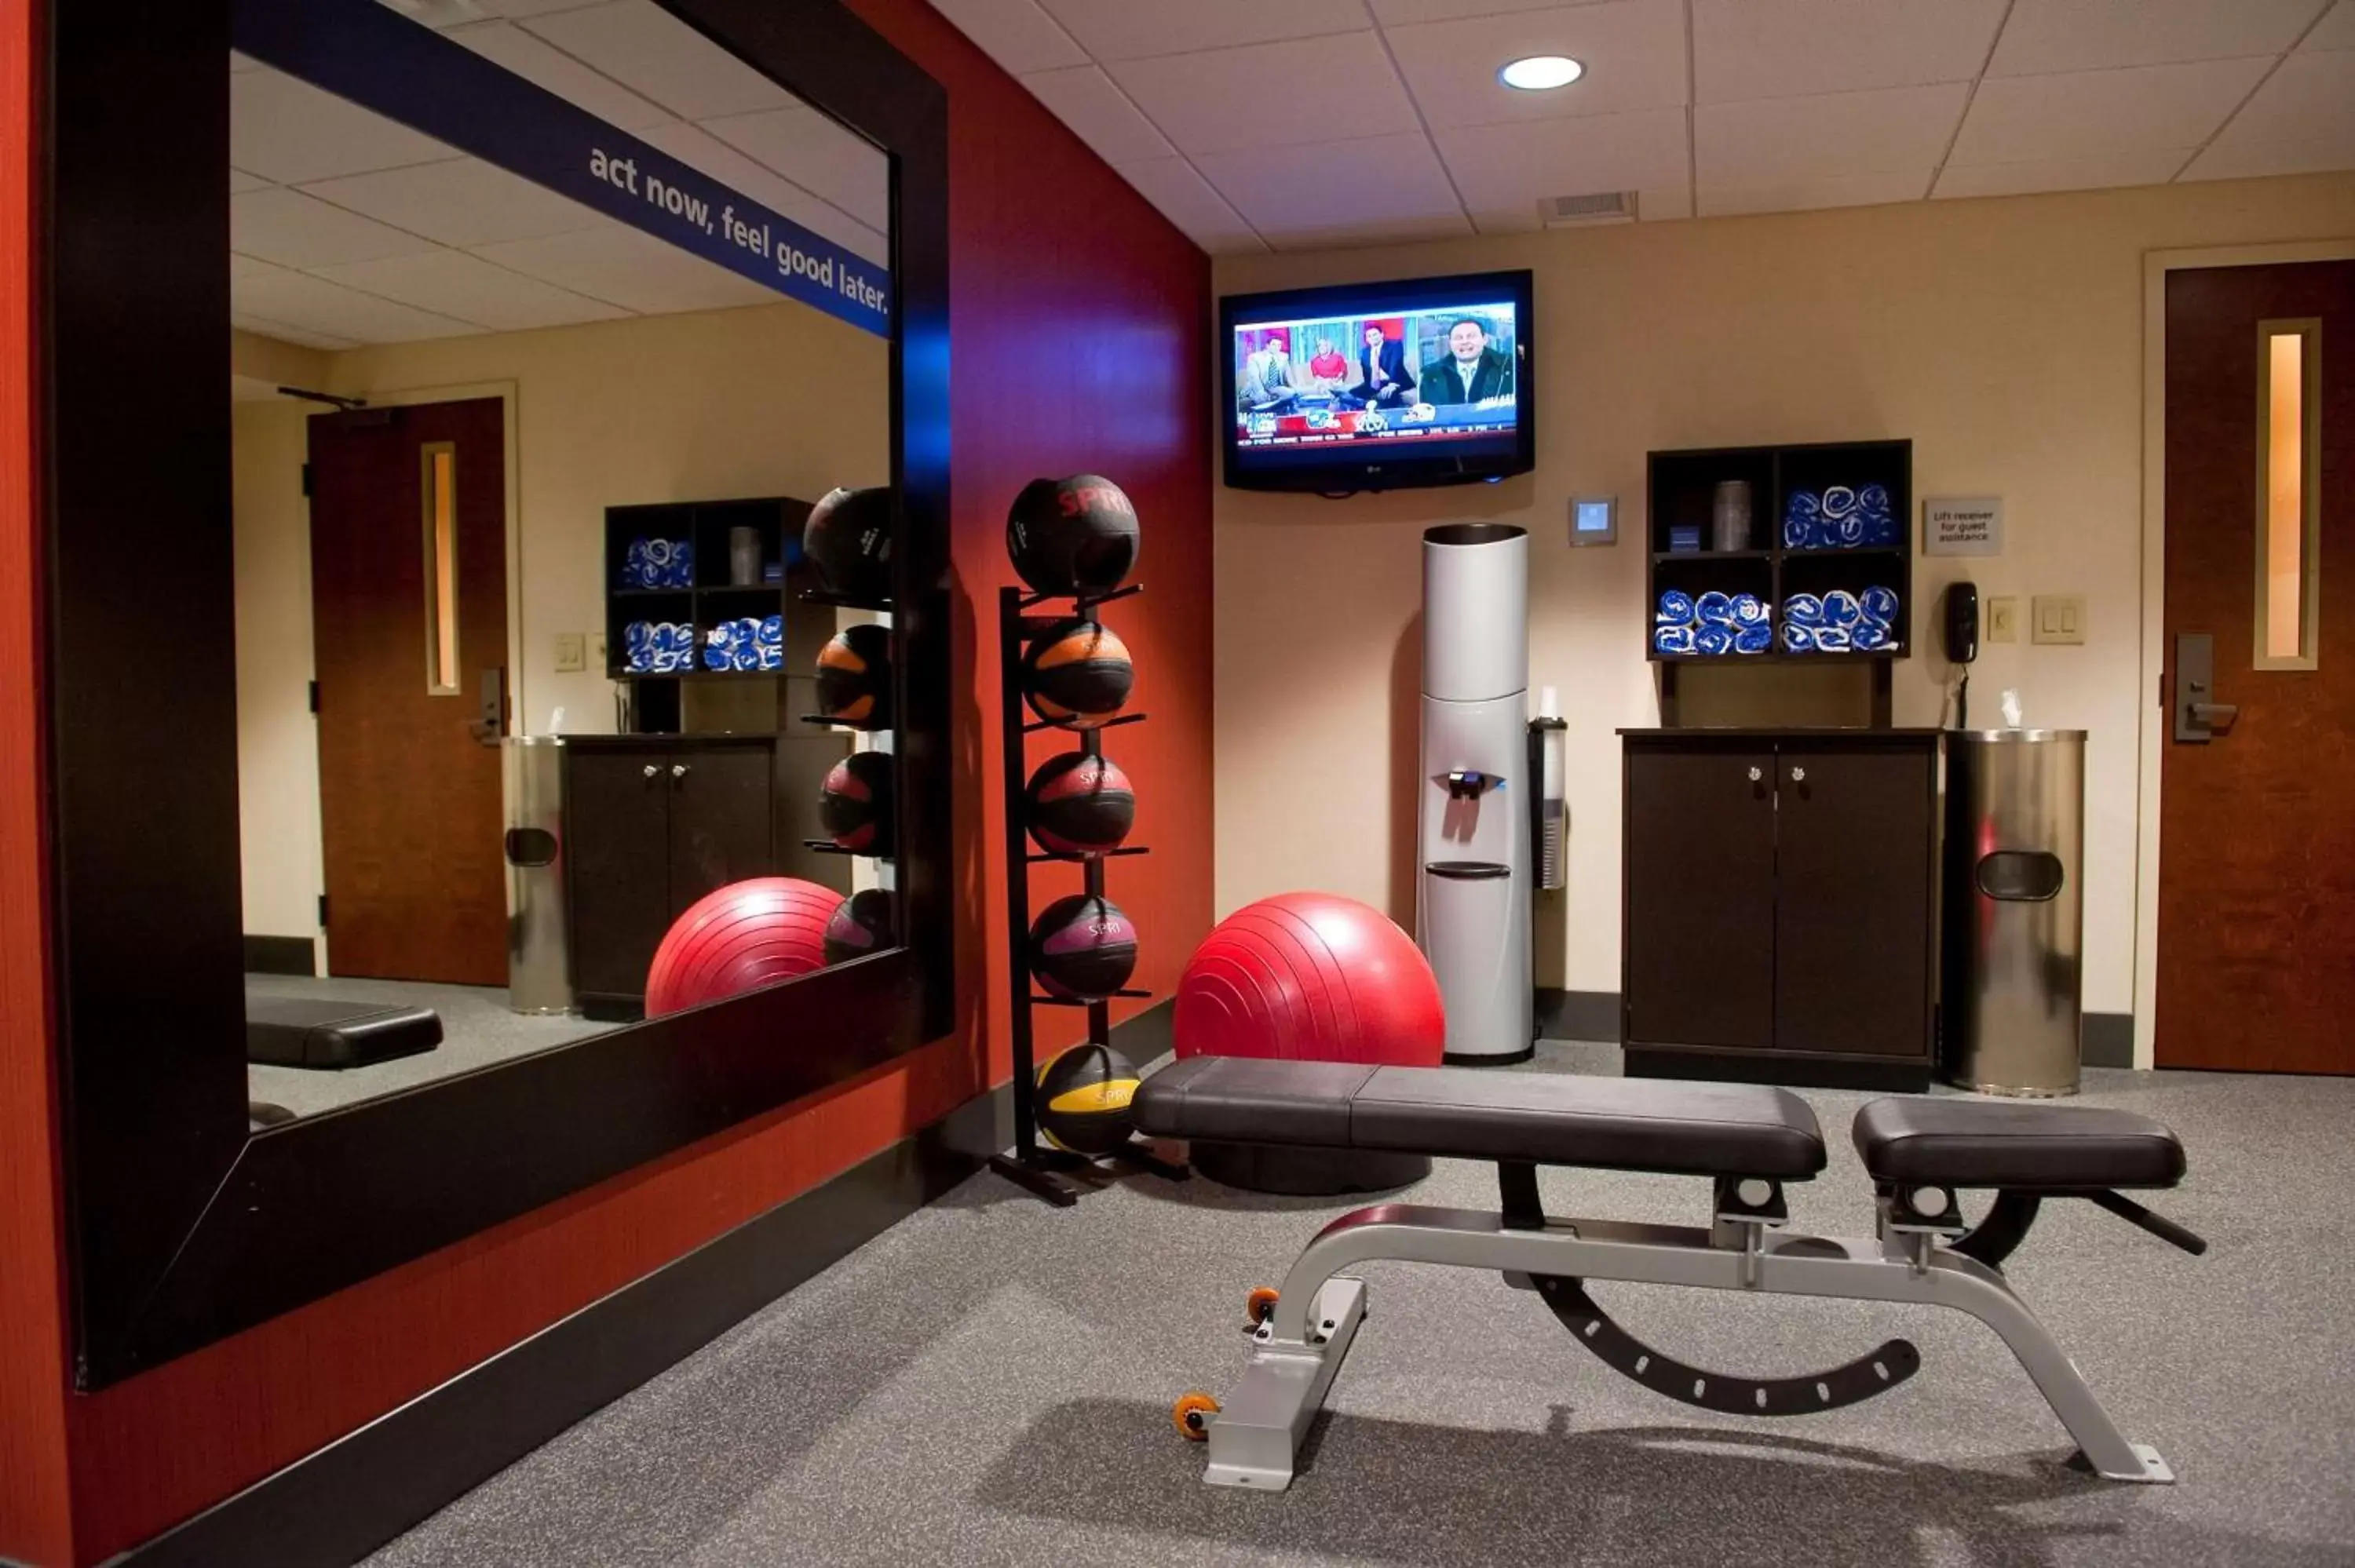 Fitness centre/facilities, Fitness Center/Facilities in Hampton Inn Nashville / Vanderbilt